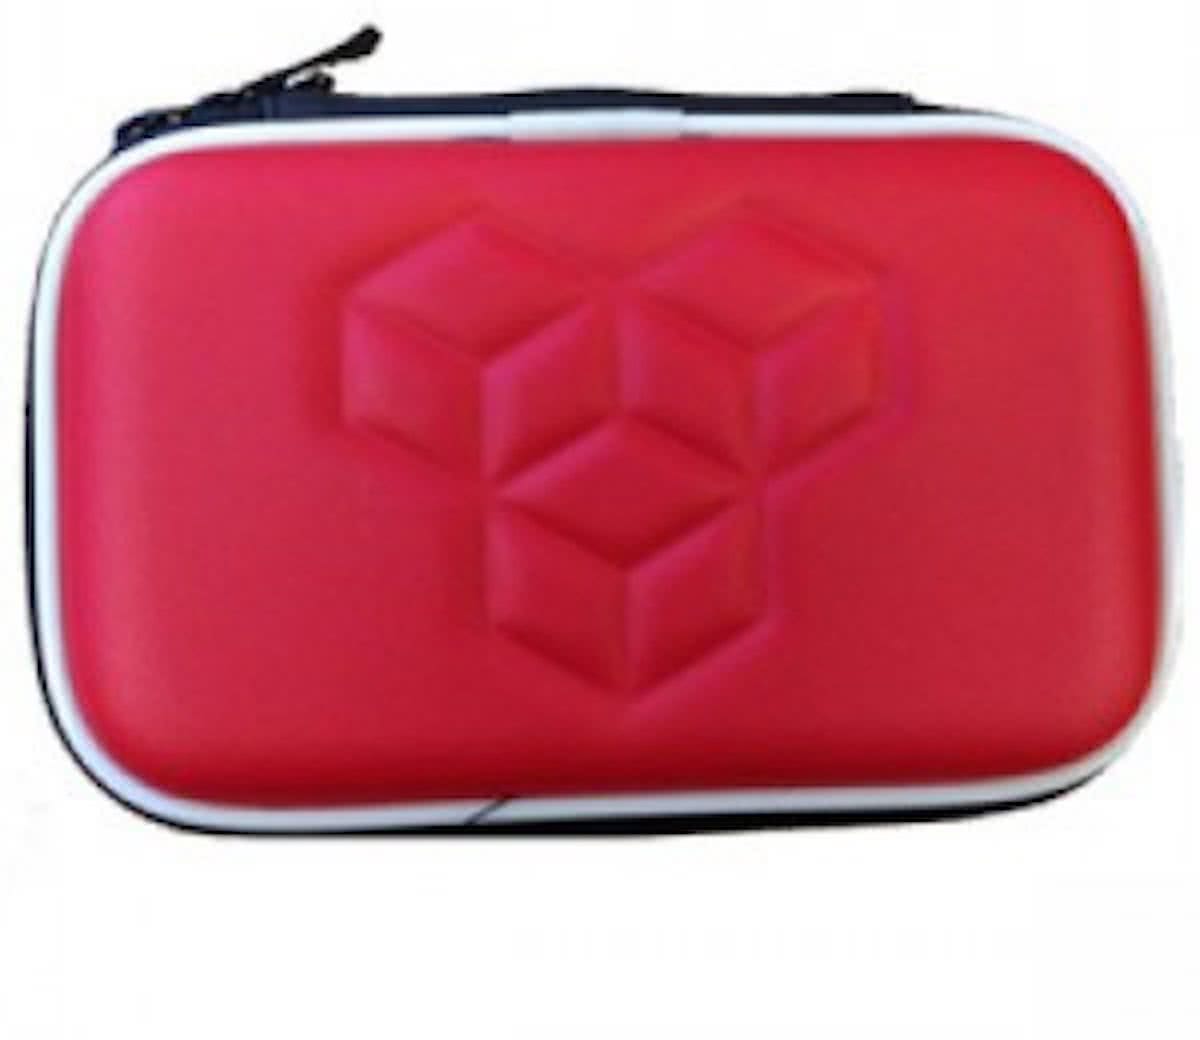 Memoryfoam case rood voor DS, DSi, DS Lite, 3DS of New 3DS